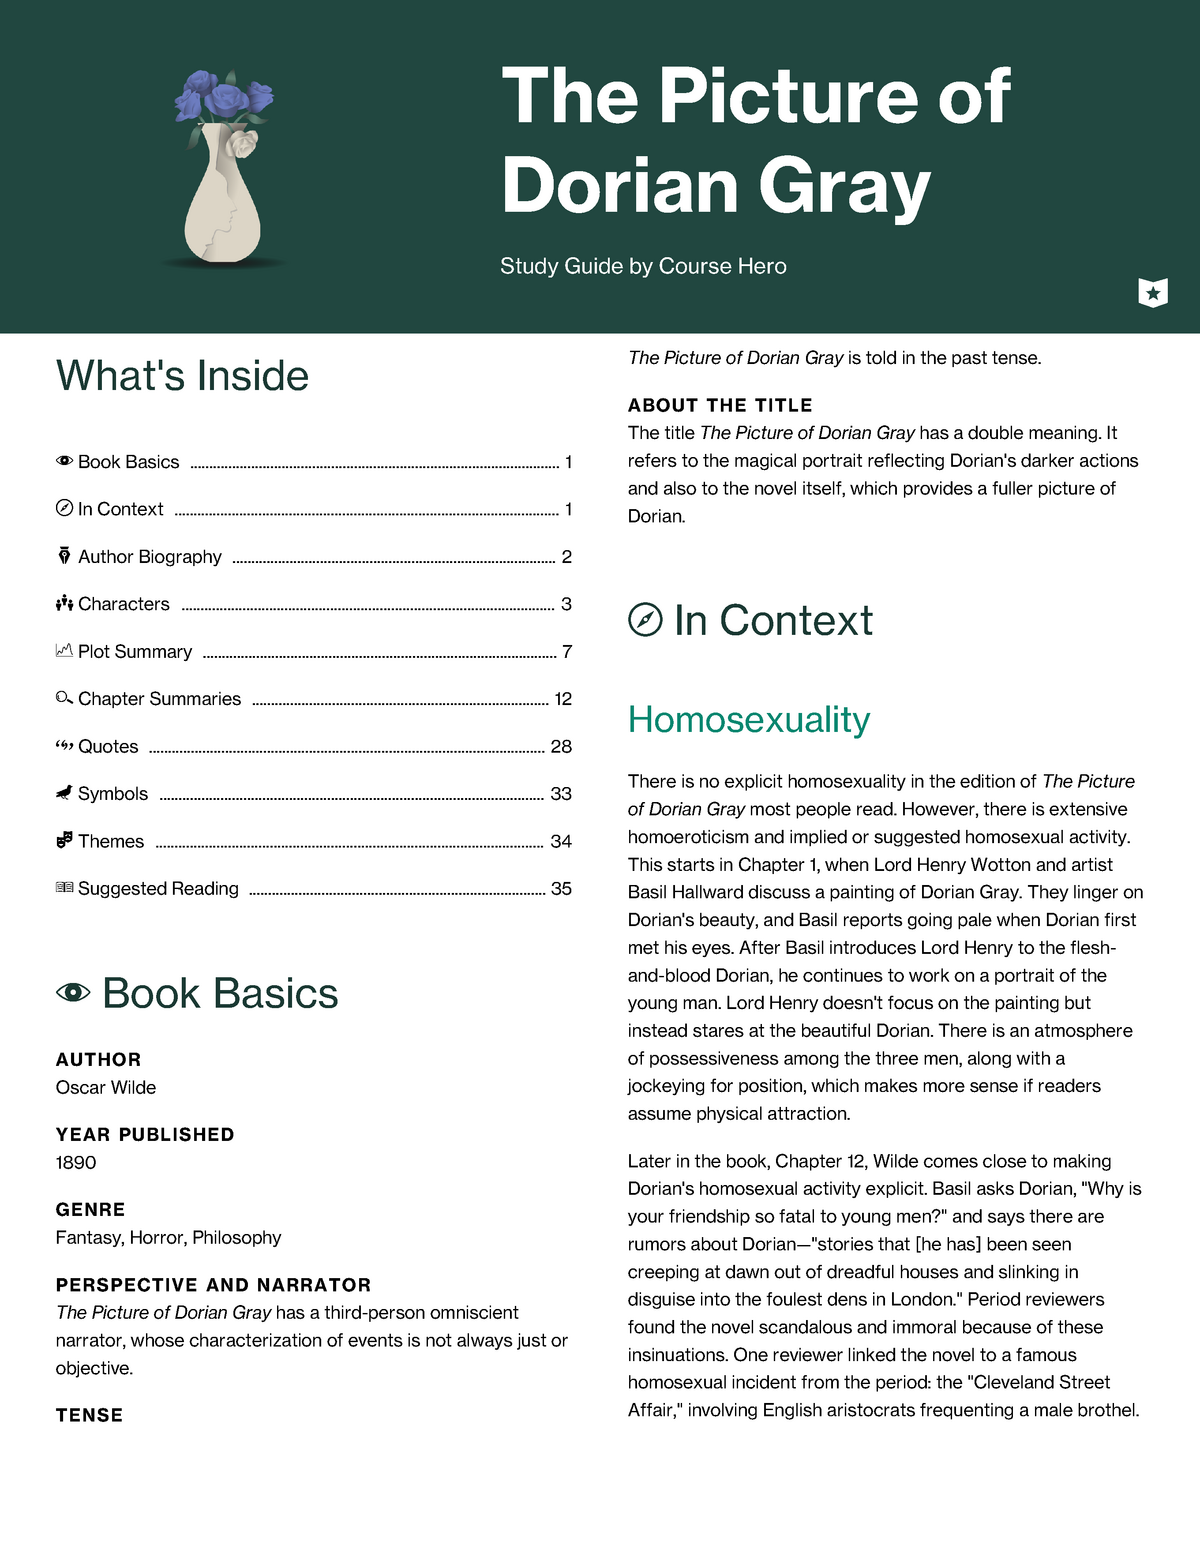 dorian gray essay grade 12